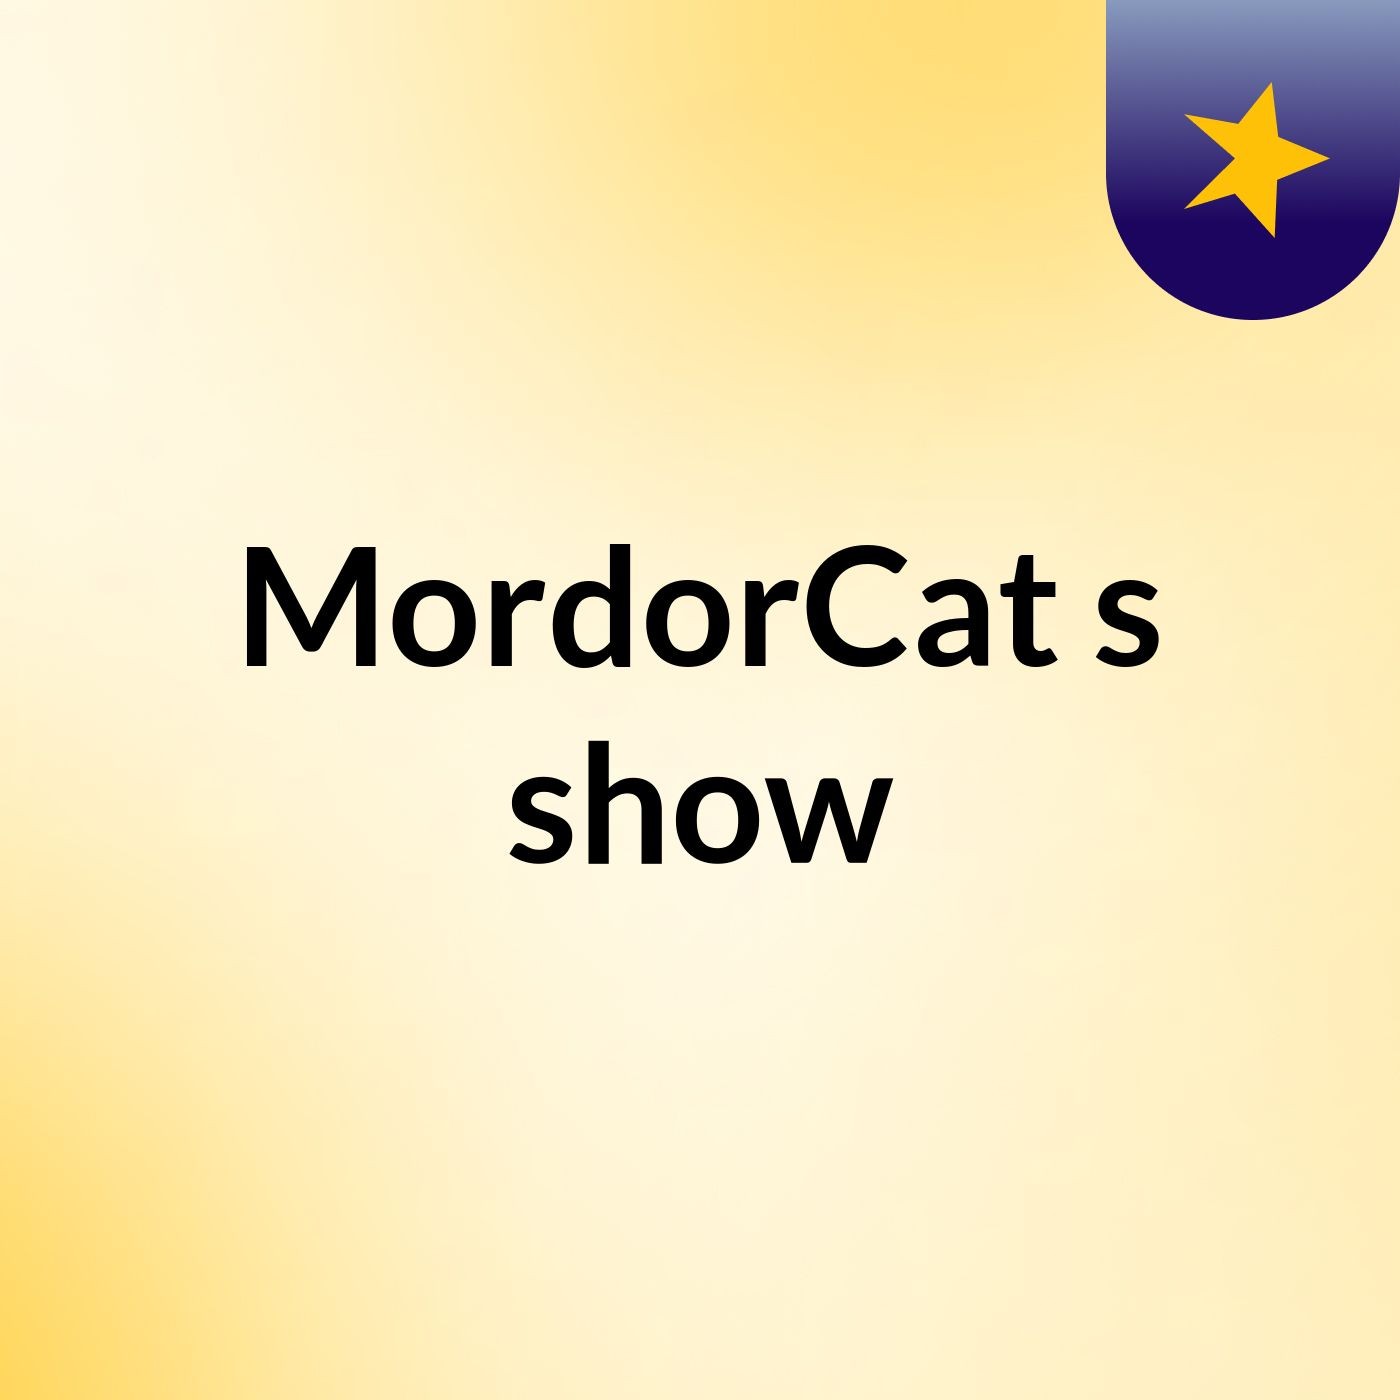 MordorCat's show